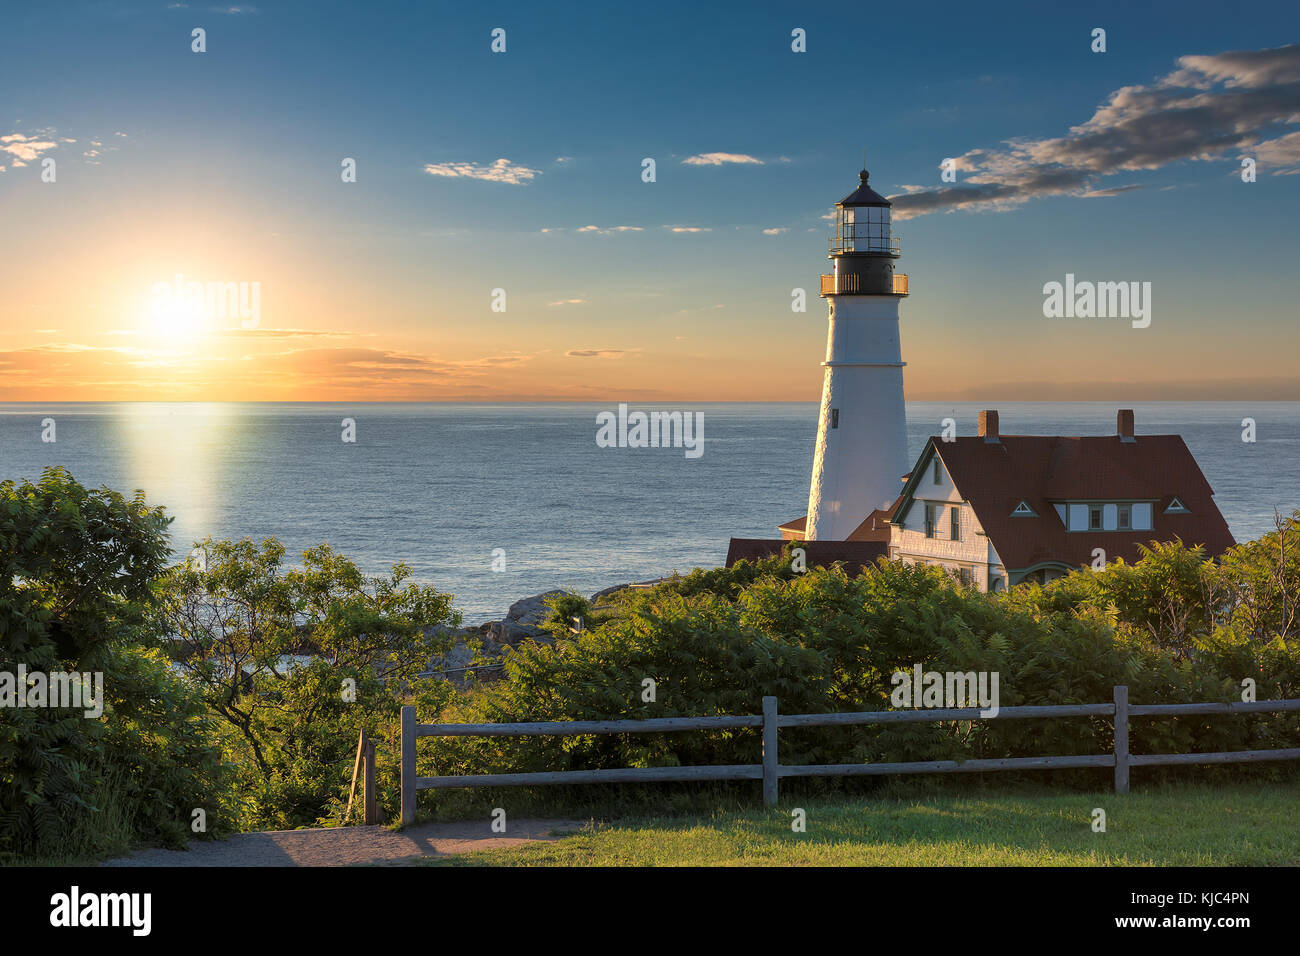 Le Portland Head Lighthouse à cape elizabeth, Maine, USA. photographié au lever du soleil. Banque D'Images